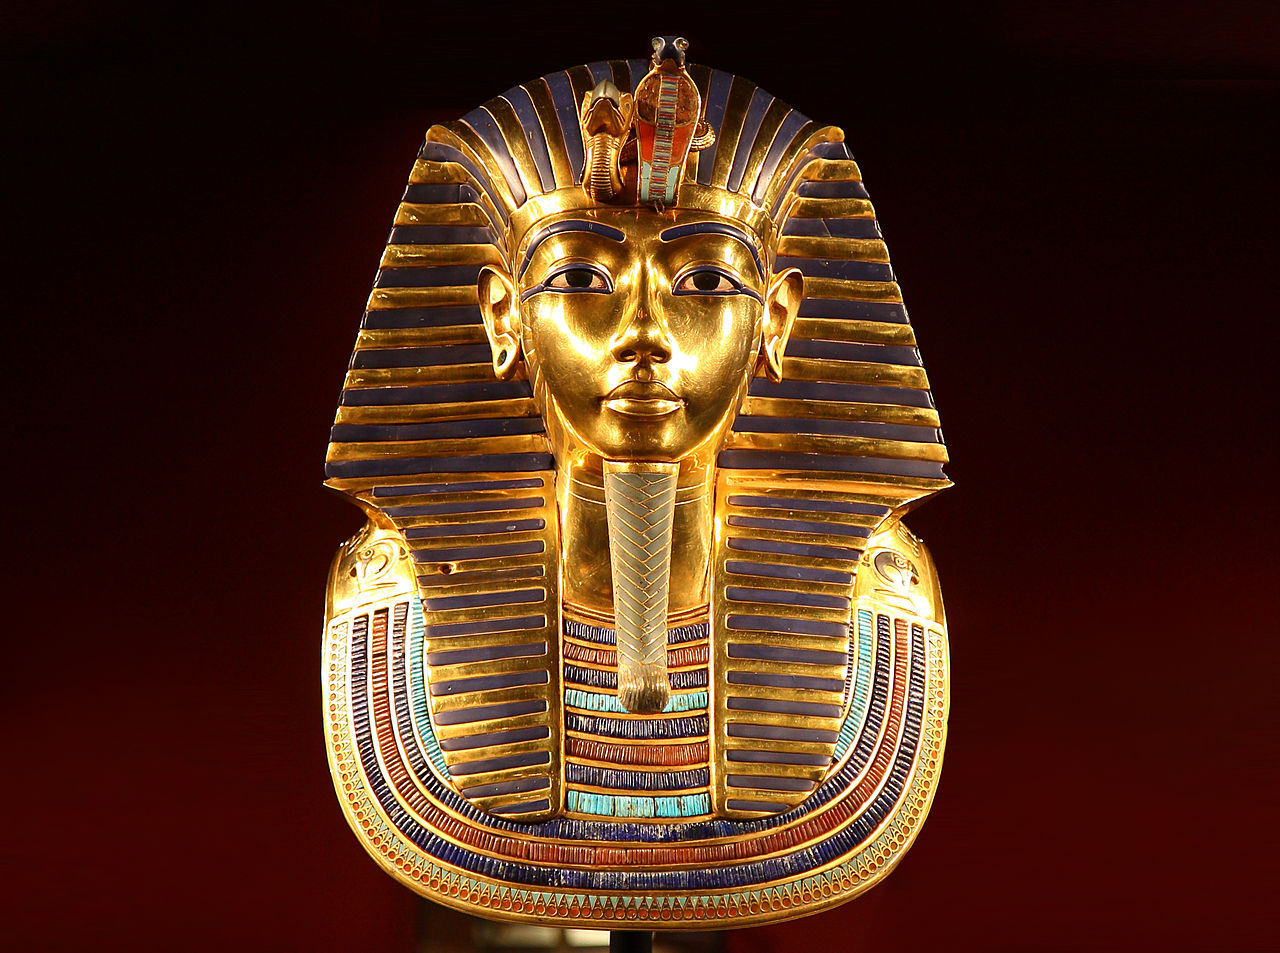 مصر تعرض آثار توت عنخ آمون كاملة لأول مرة